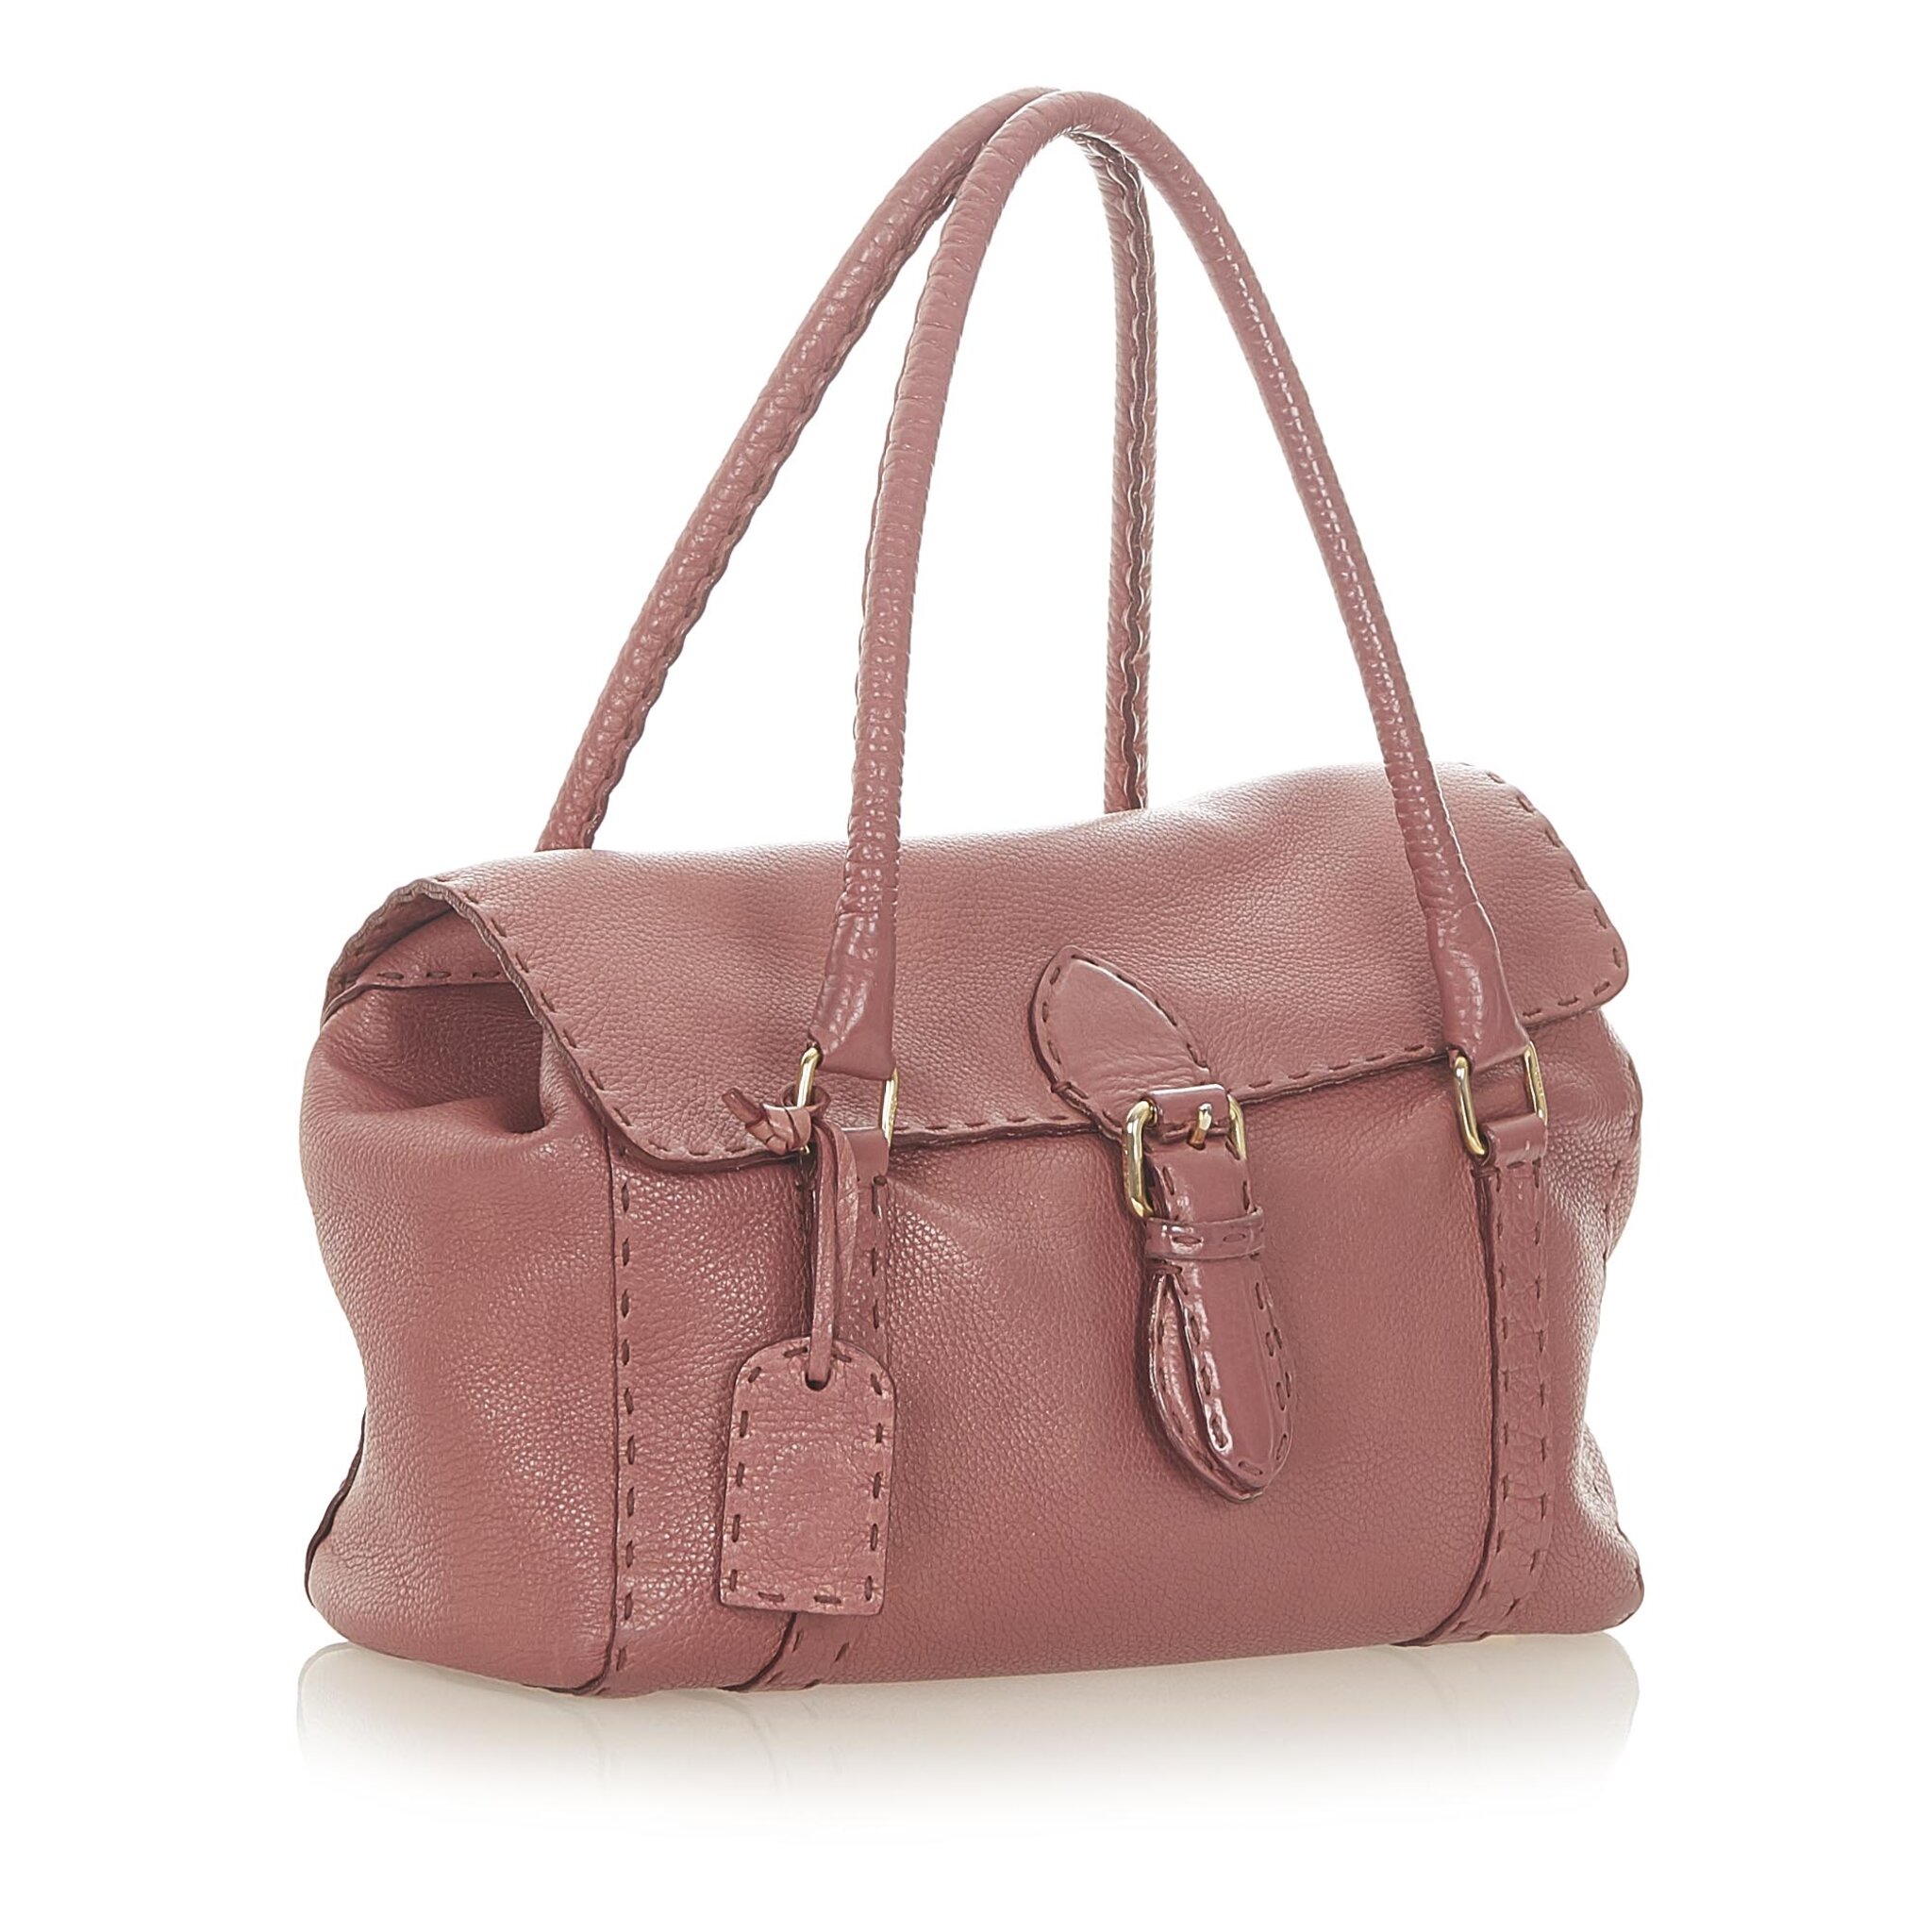 Fendi Selleria Linda Leather Handbag, pink